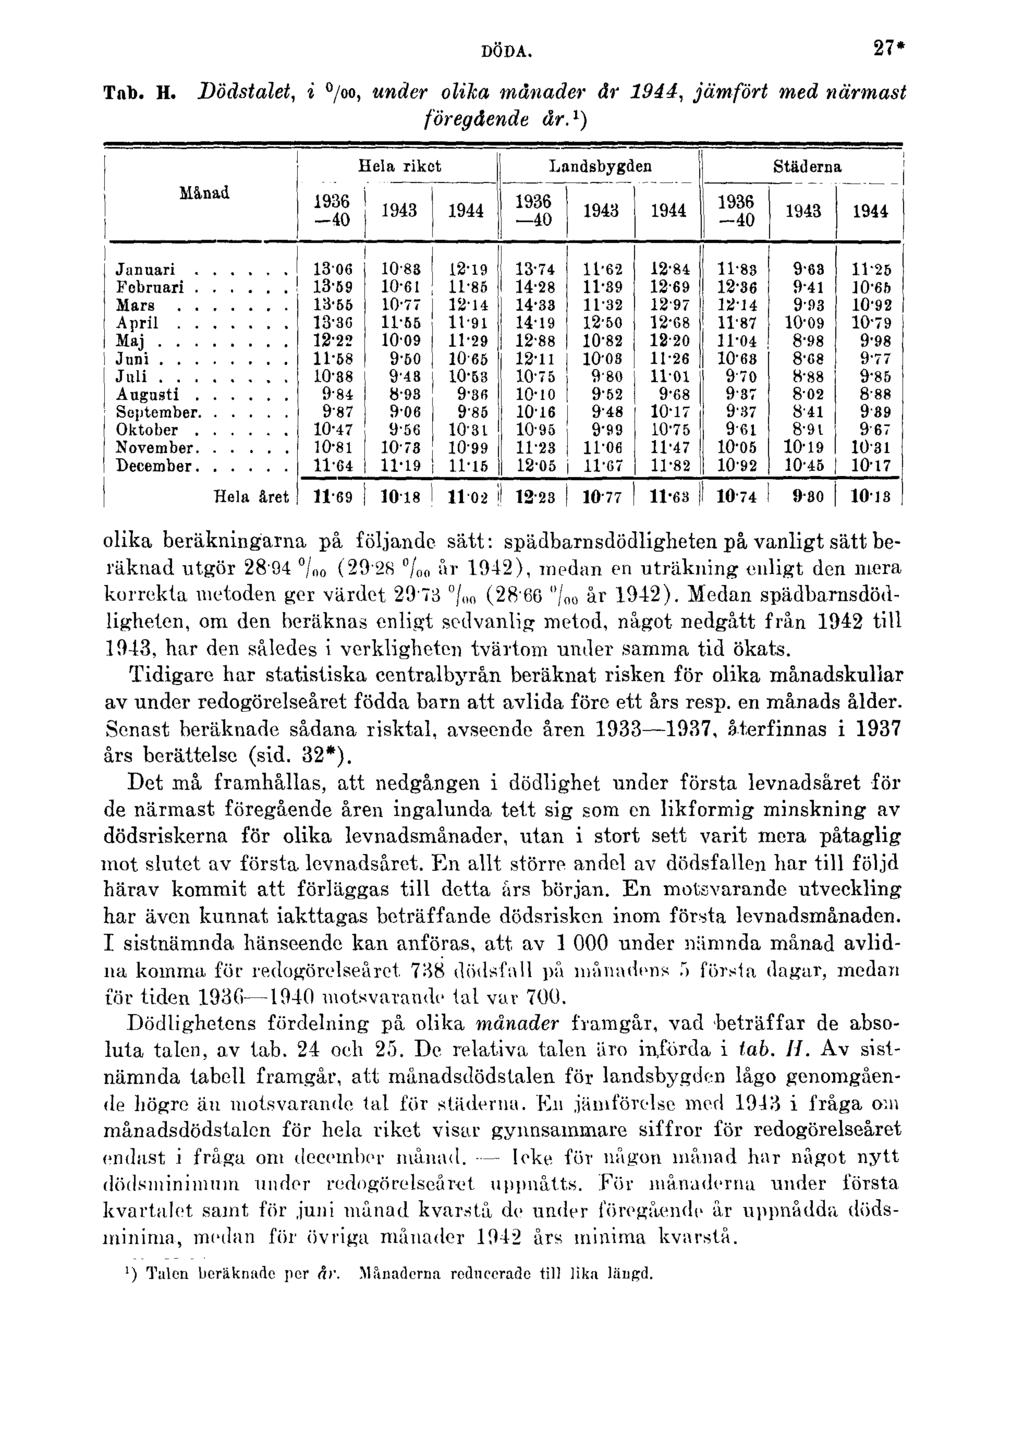 DÖDA. 27* Tab. H. Dödstalet, i, under olika månader år 1944, jämfört med närmast föregående år.